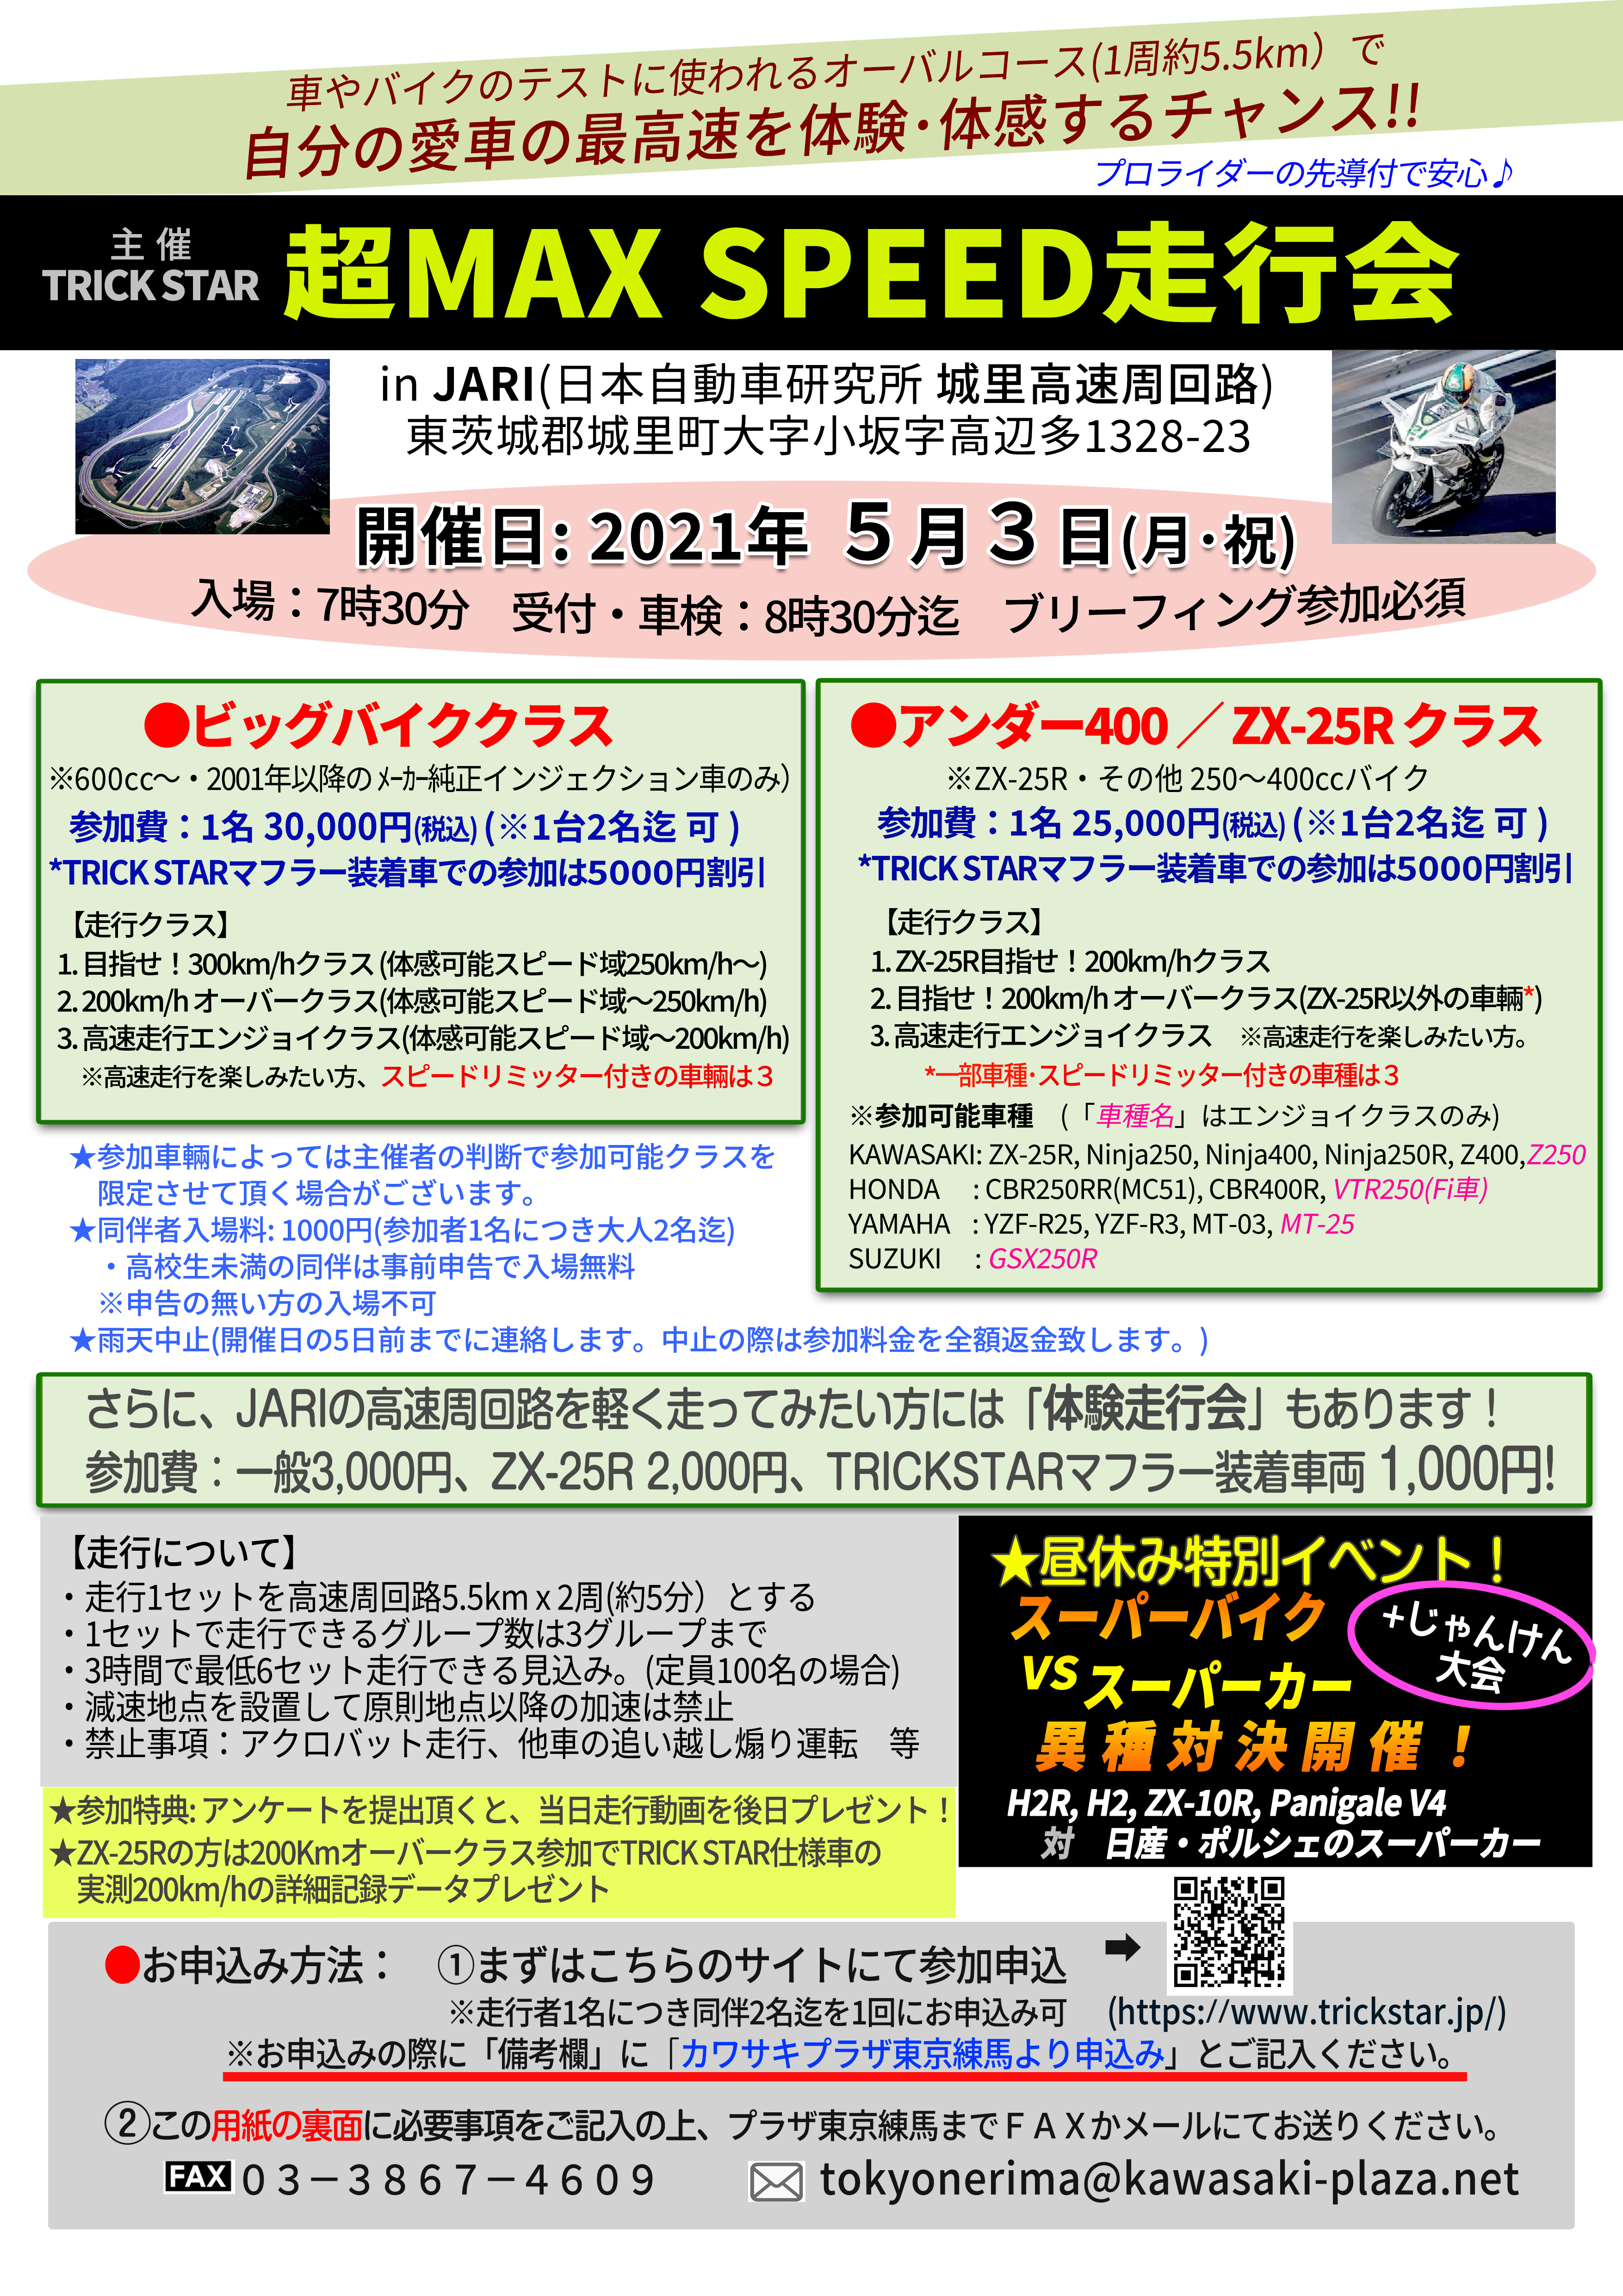 愛車で最高速体験【超MAX SPEED走行会】 | カワサキプラザ東京練馬 